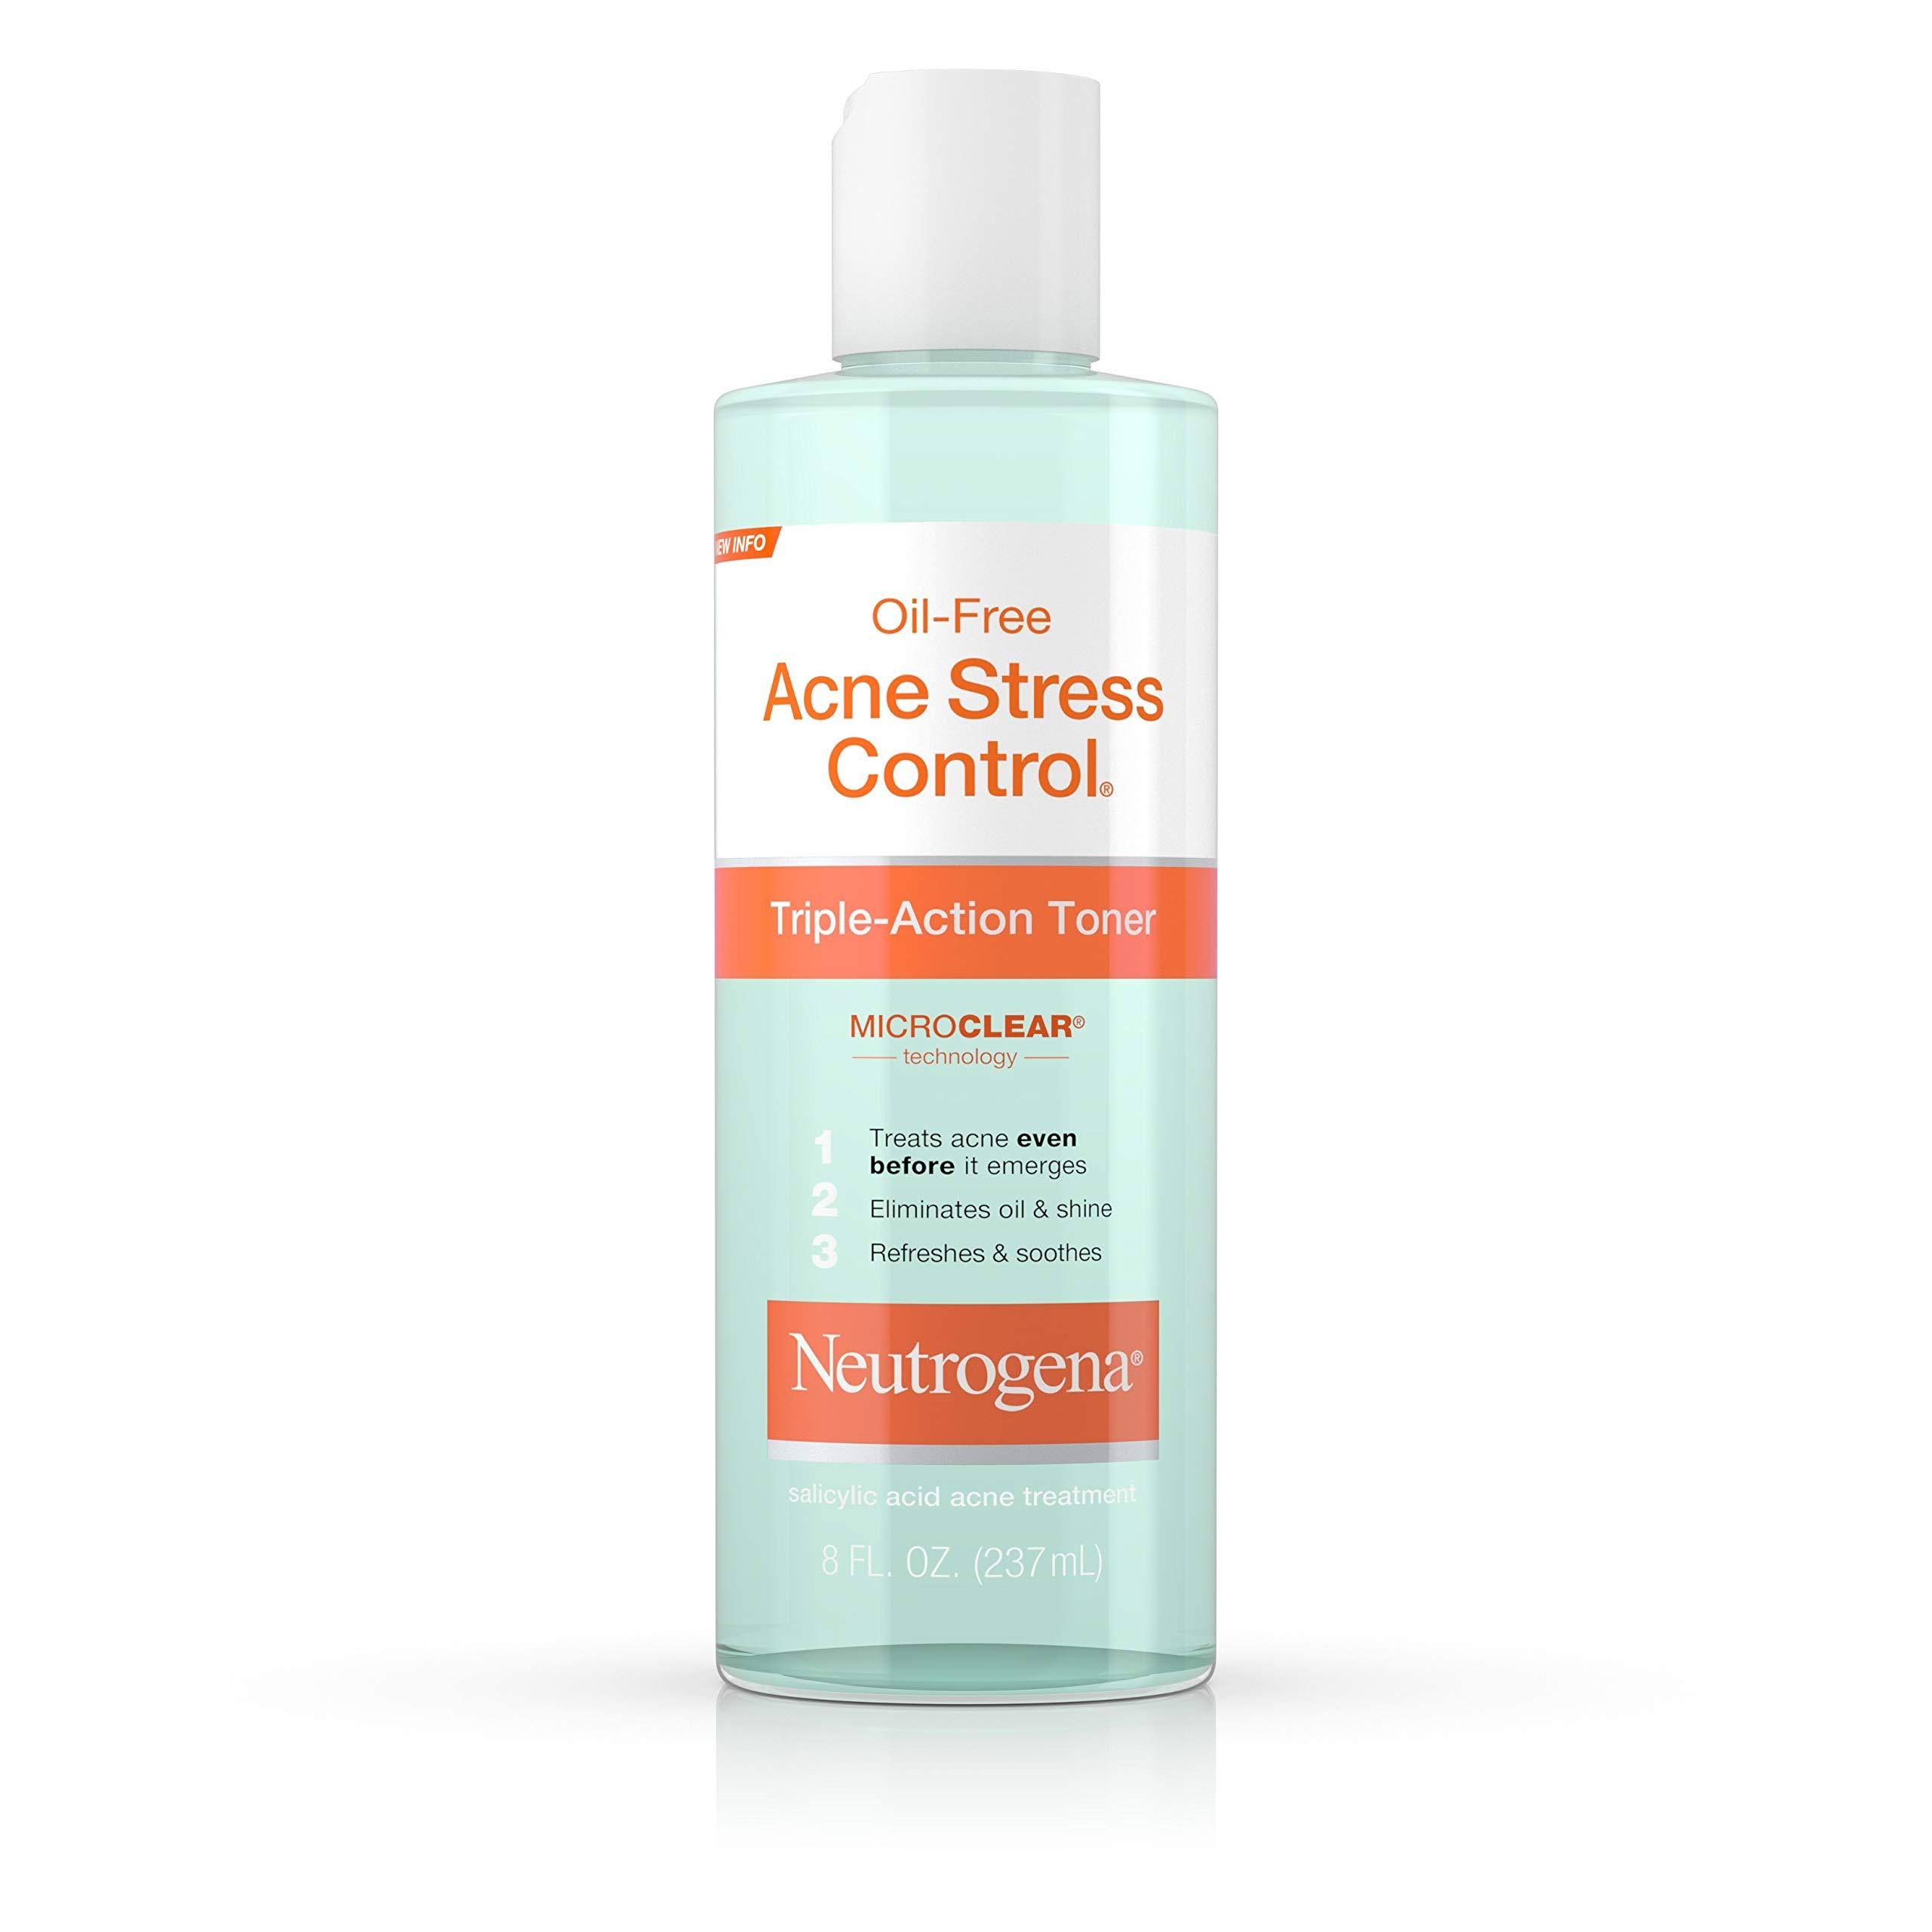 Neutrogena Acne Stress Control Oil Free Triple Action Toner - 8oz